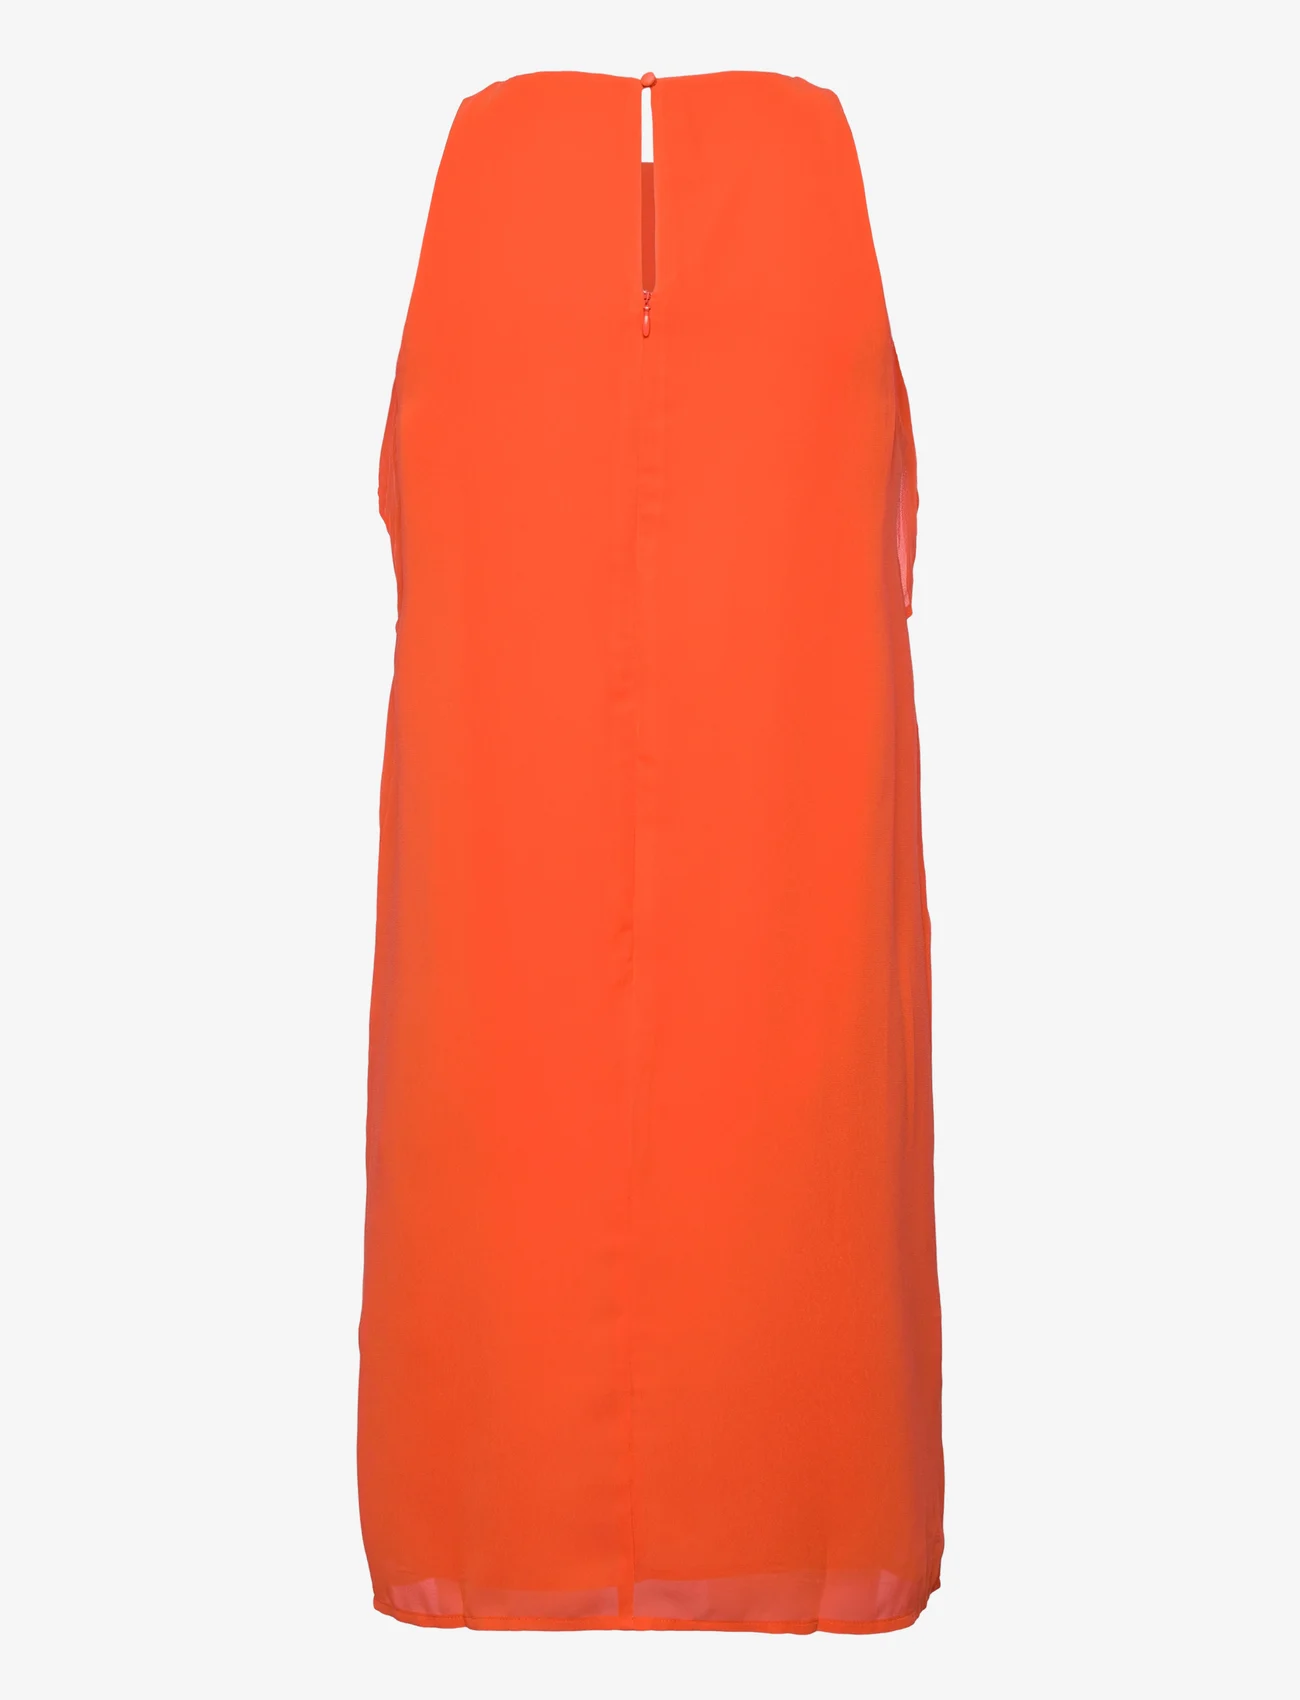 Esprit Casual - Dresses light woven - feestelijke kleding voor outlet-prijzen - bright orange - 1